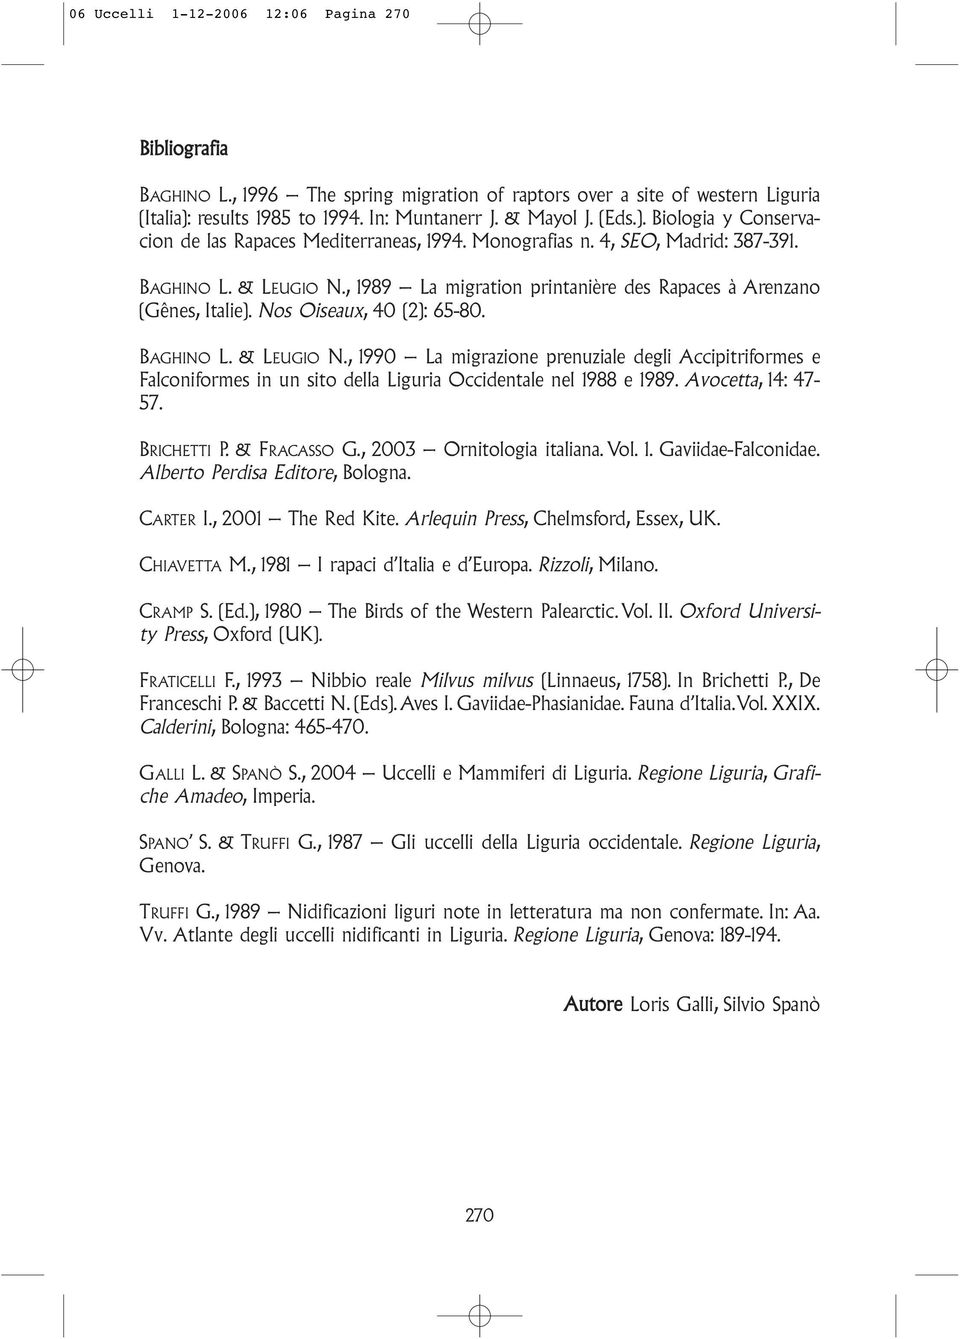 Avocetta, 14: 47-57. BRICHETTI P. & FRACASSO G., 2003 Ornitologia italiana. Vol. 1. Gaviidae-Falconidae. Alberto Perdisa Editore, Bologna. CARTER I., 2001 The Red Kite.